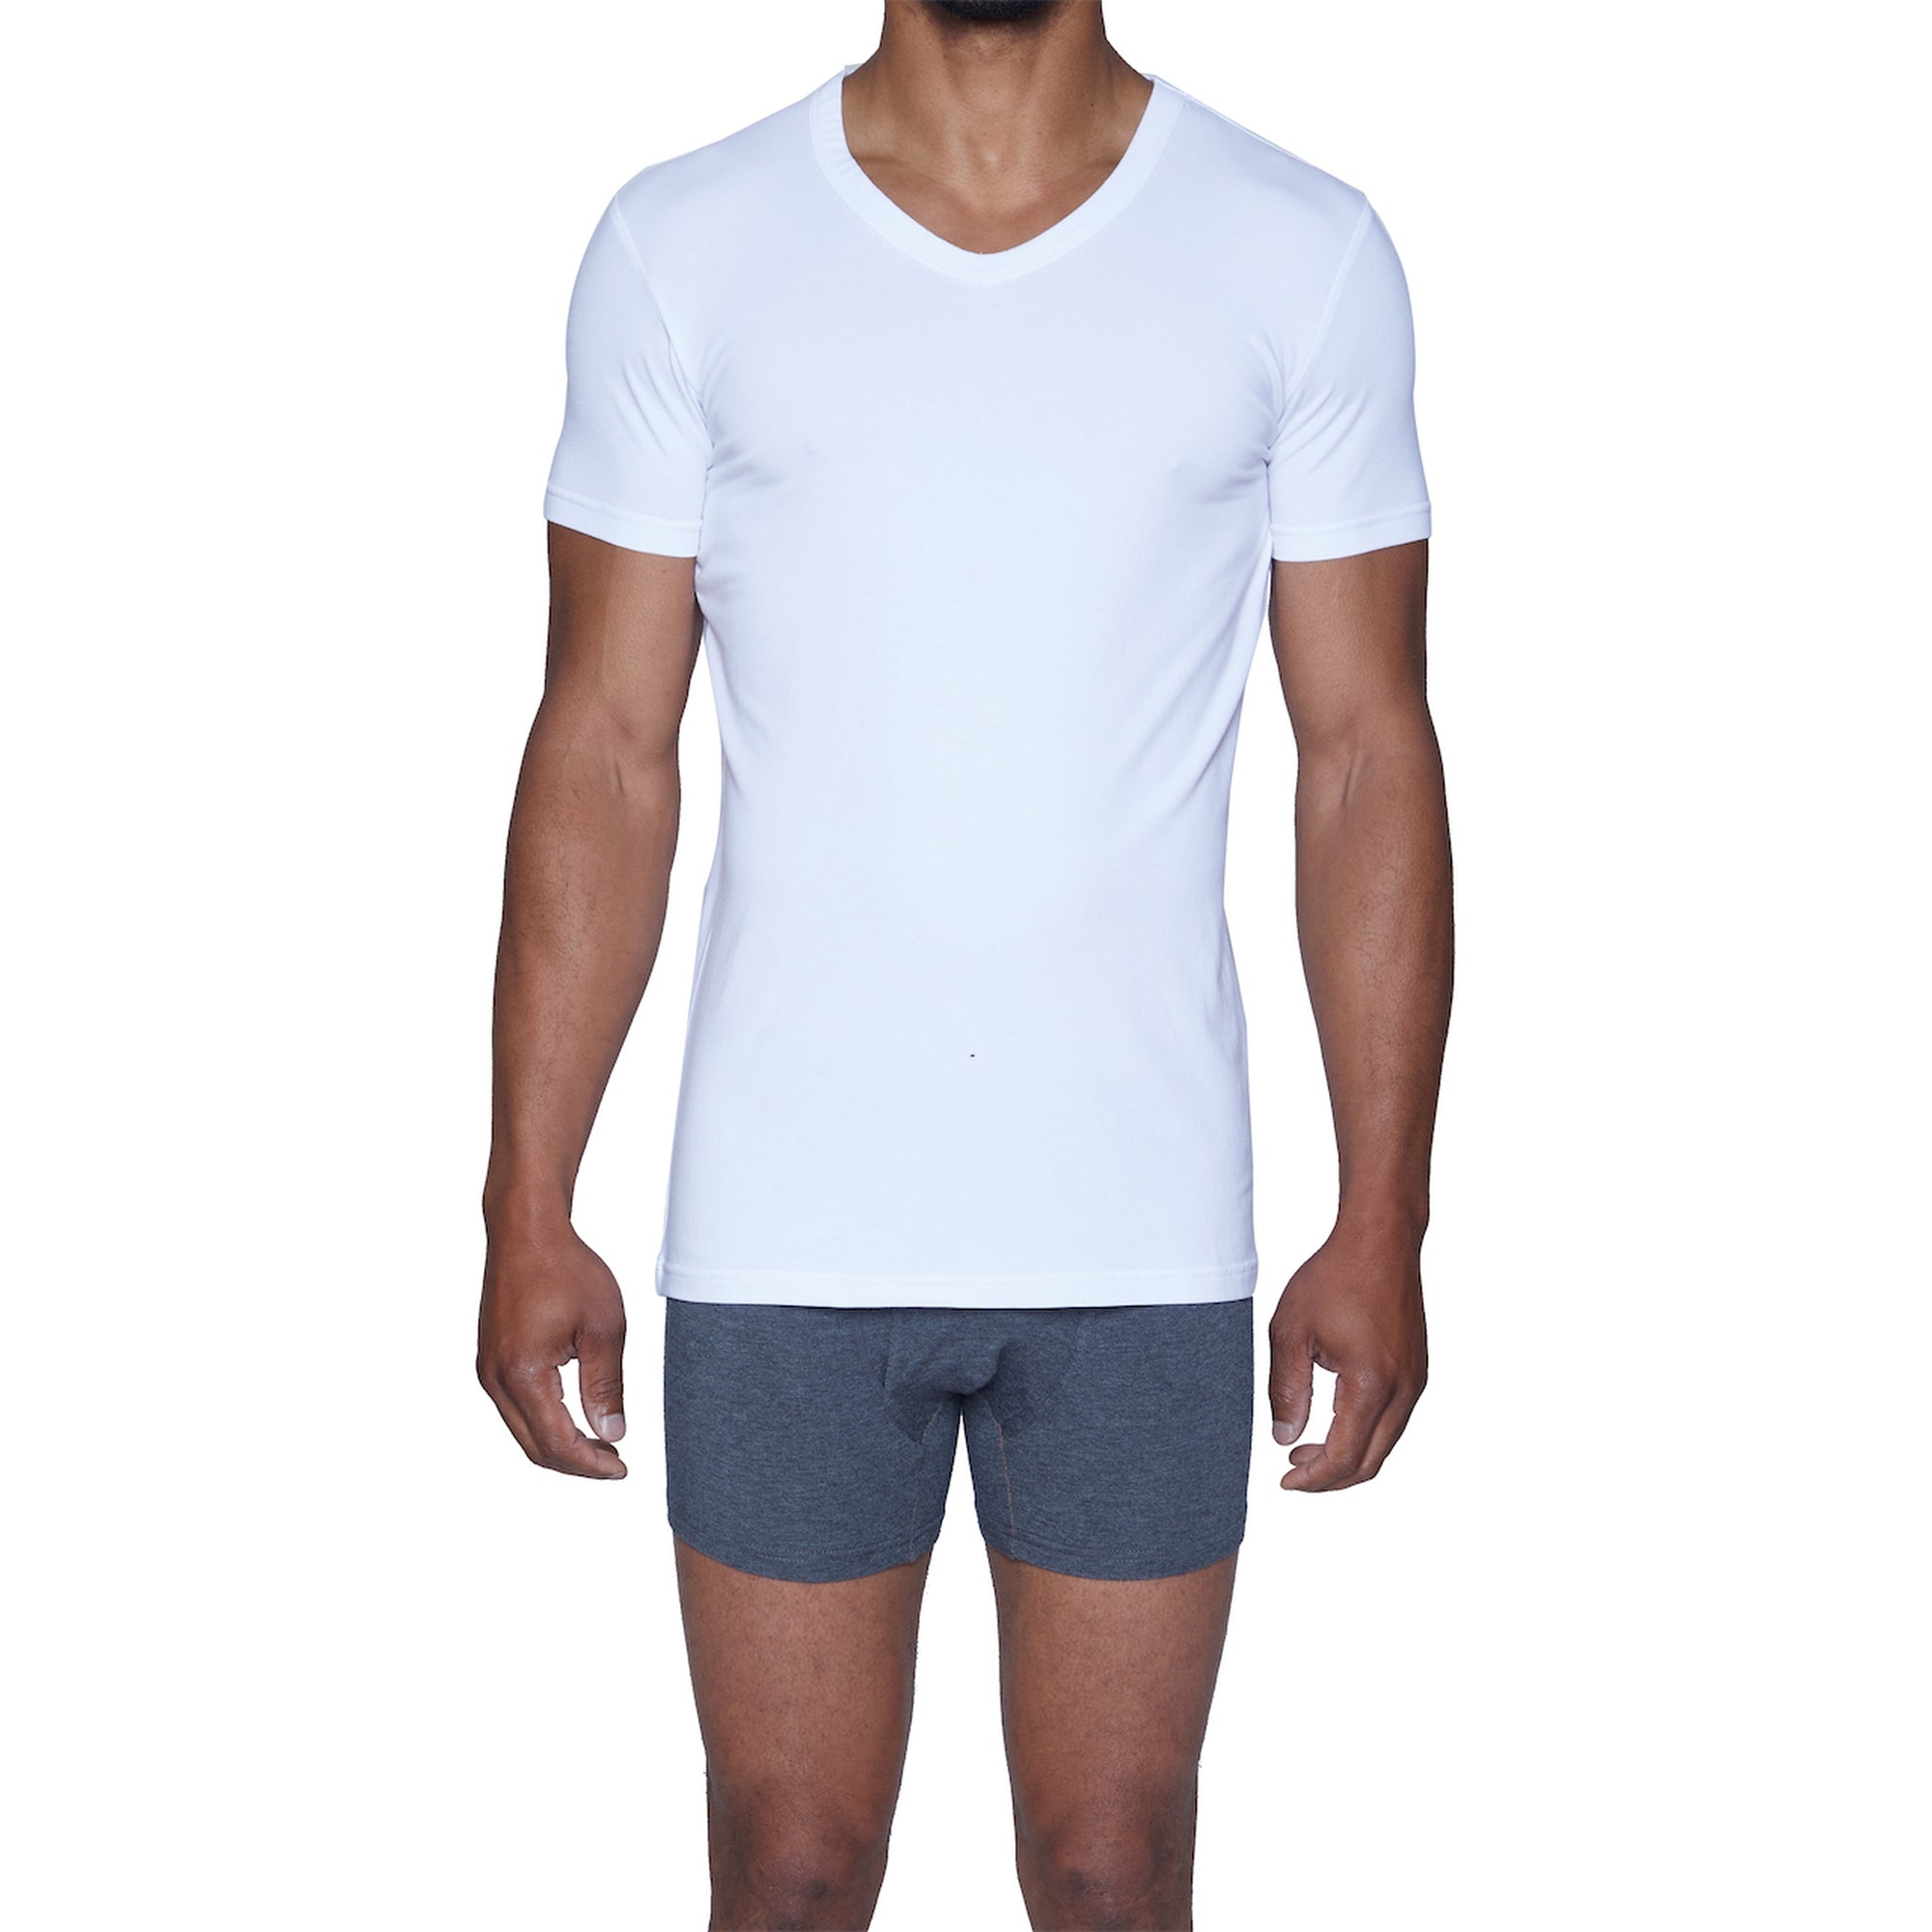 V-Neck Undershirt in White by Wood Underwear